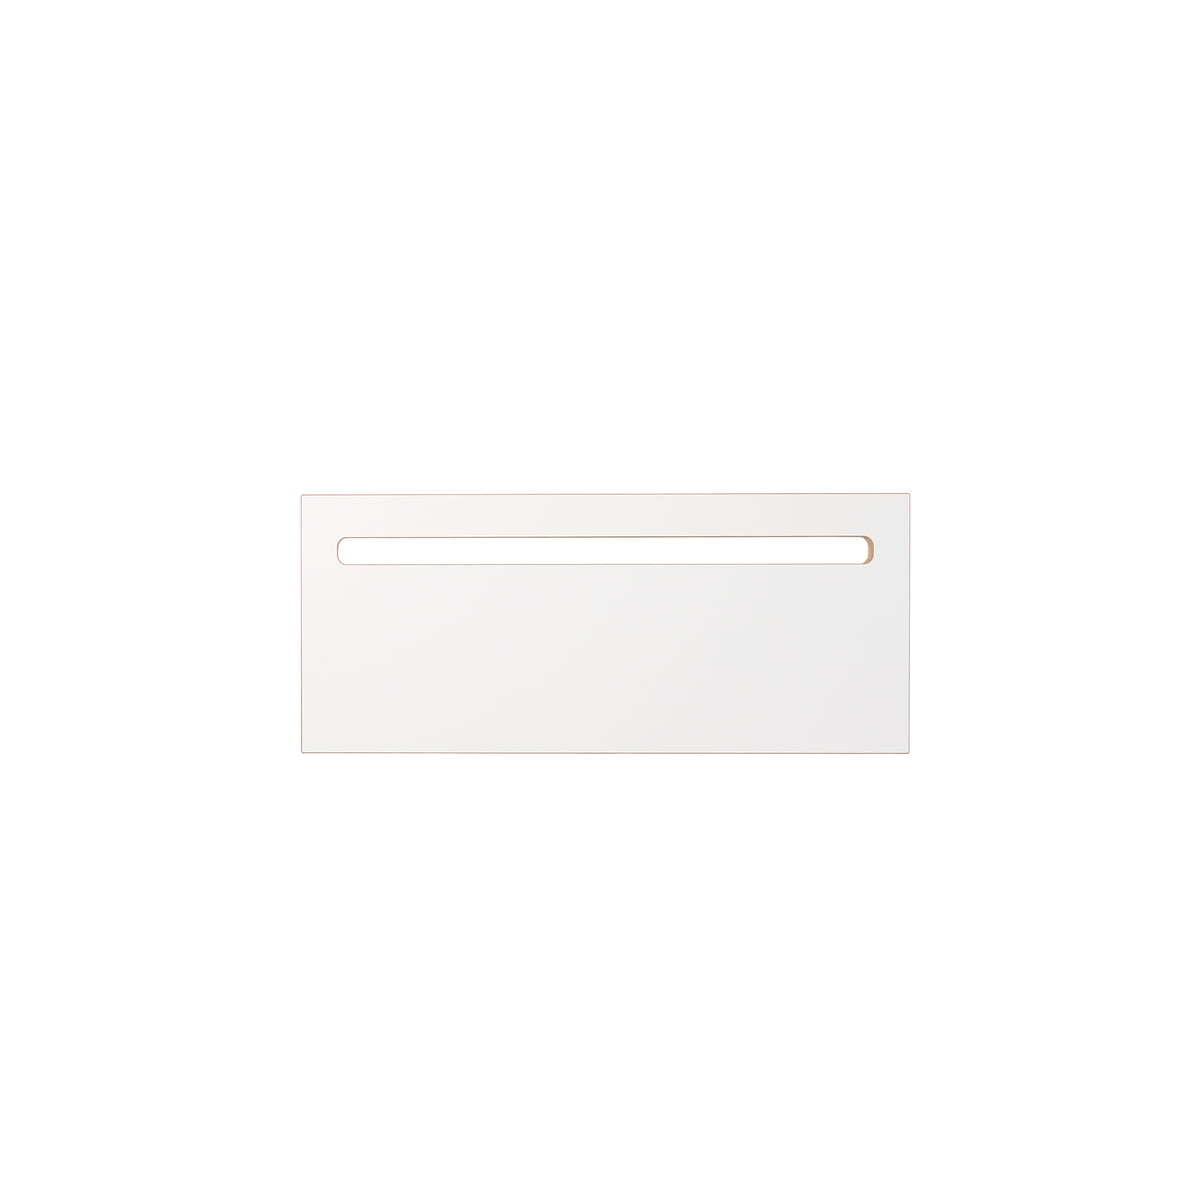 tojo - plateau d'écriture pour pult bureau debout s, 58 x 25 cm, blanc